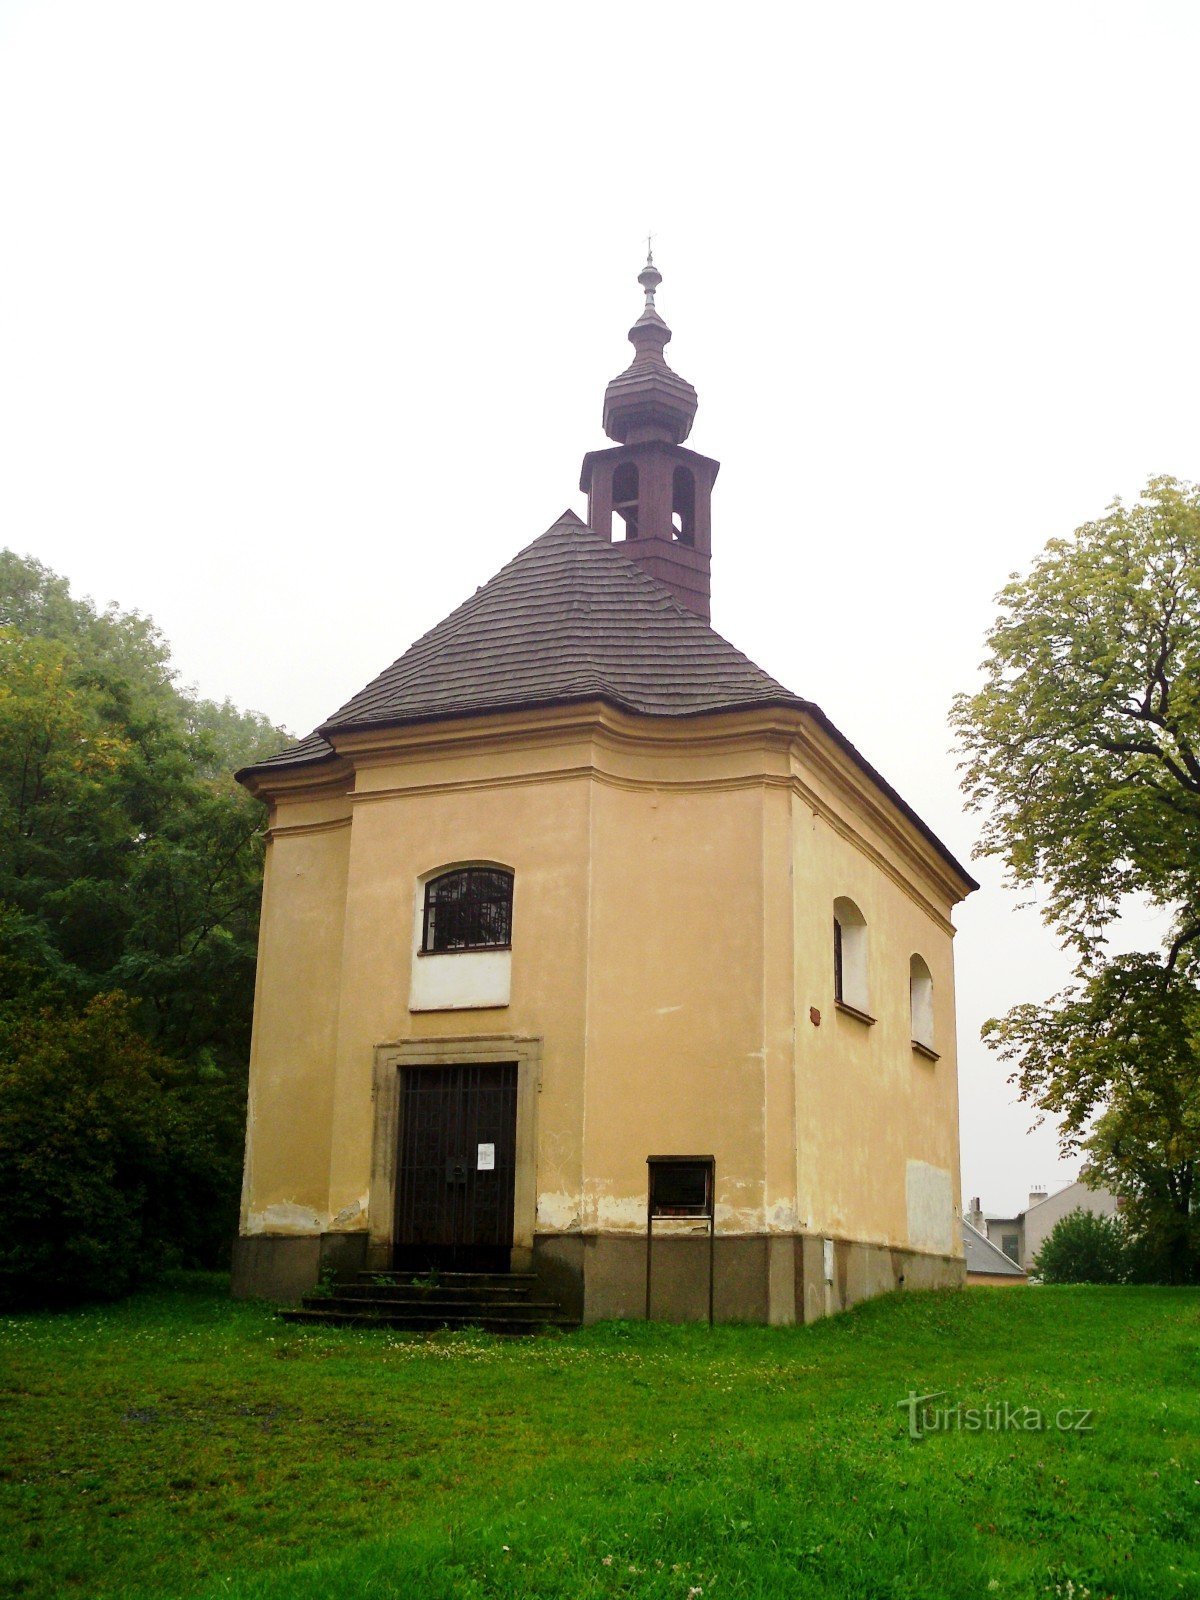 Bystřice pod Hostýnem - Pyhän Nikolauksen kappeli. Lawrence